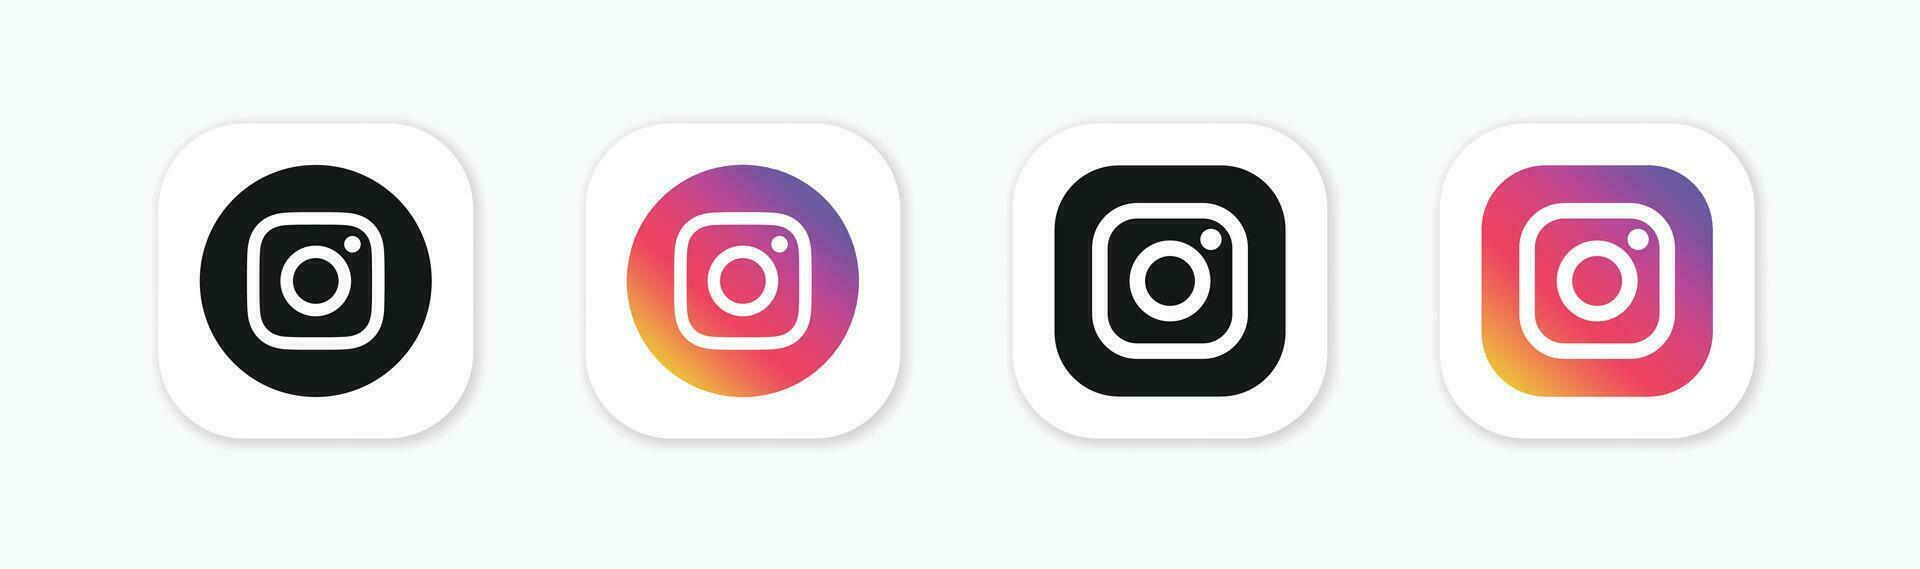 conjunto de instagram social medios de comunicación logo iconos instagram icono. sencillo vector ilustración.